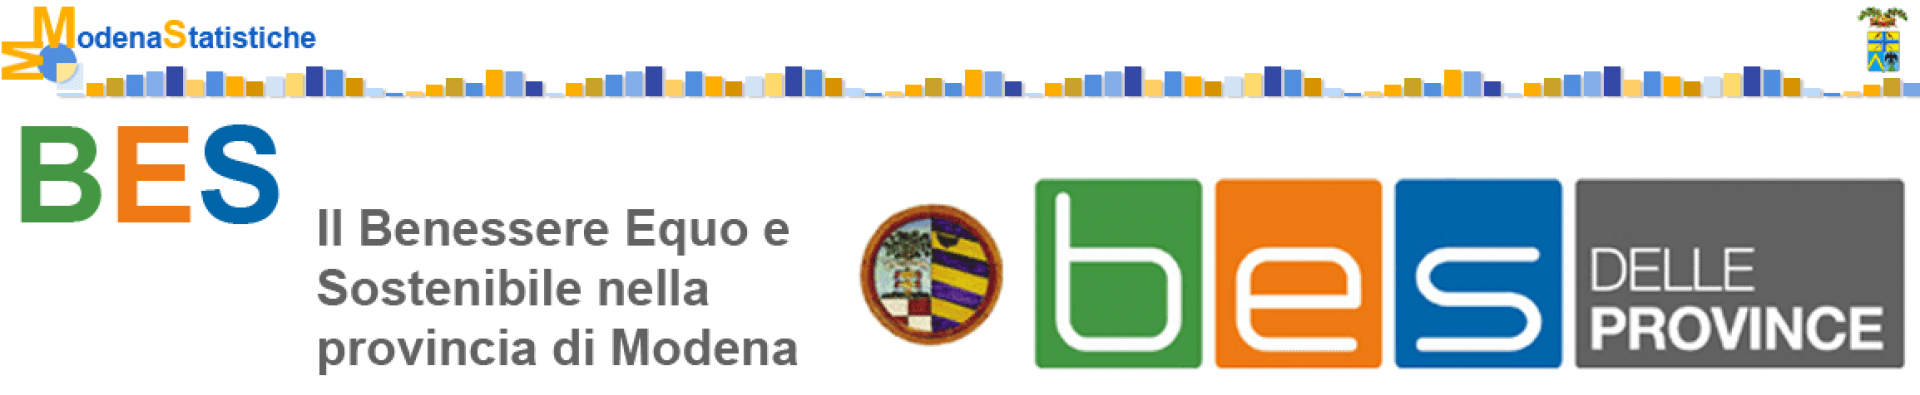 BES - Il Benessere Equo e Sostenibile nella provincia di Modena - sulla destra in alto logo della Provincia di Modena